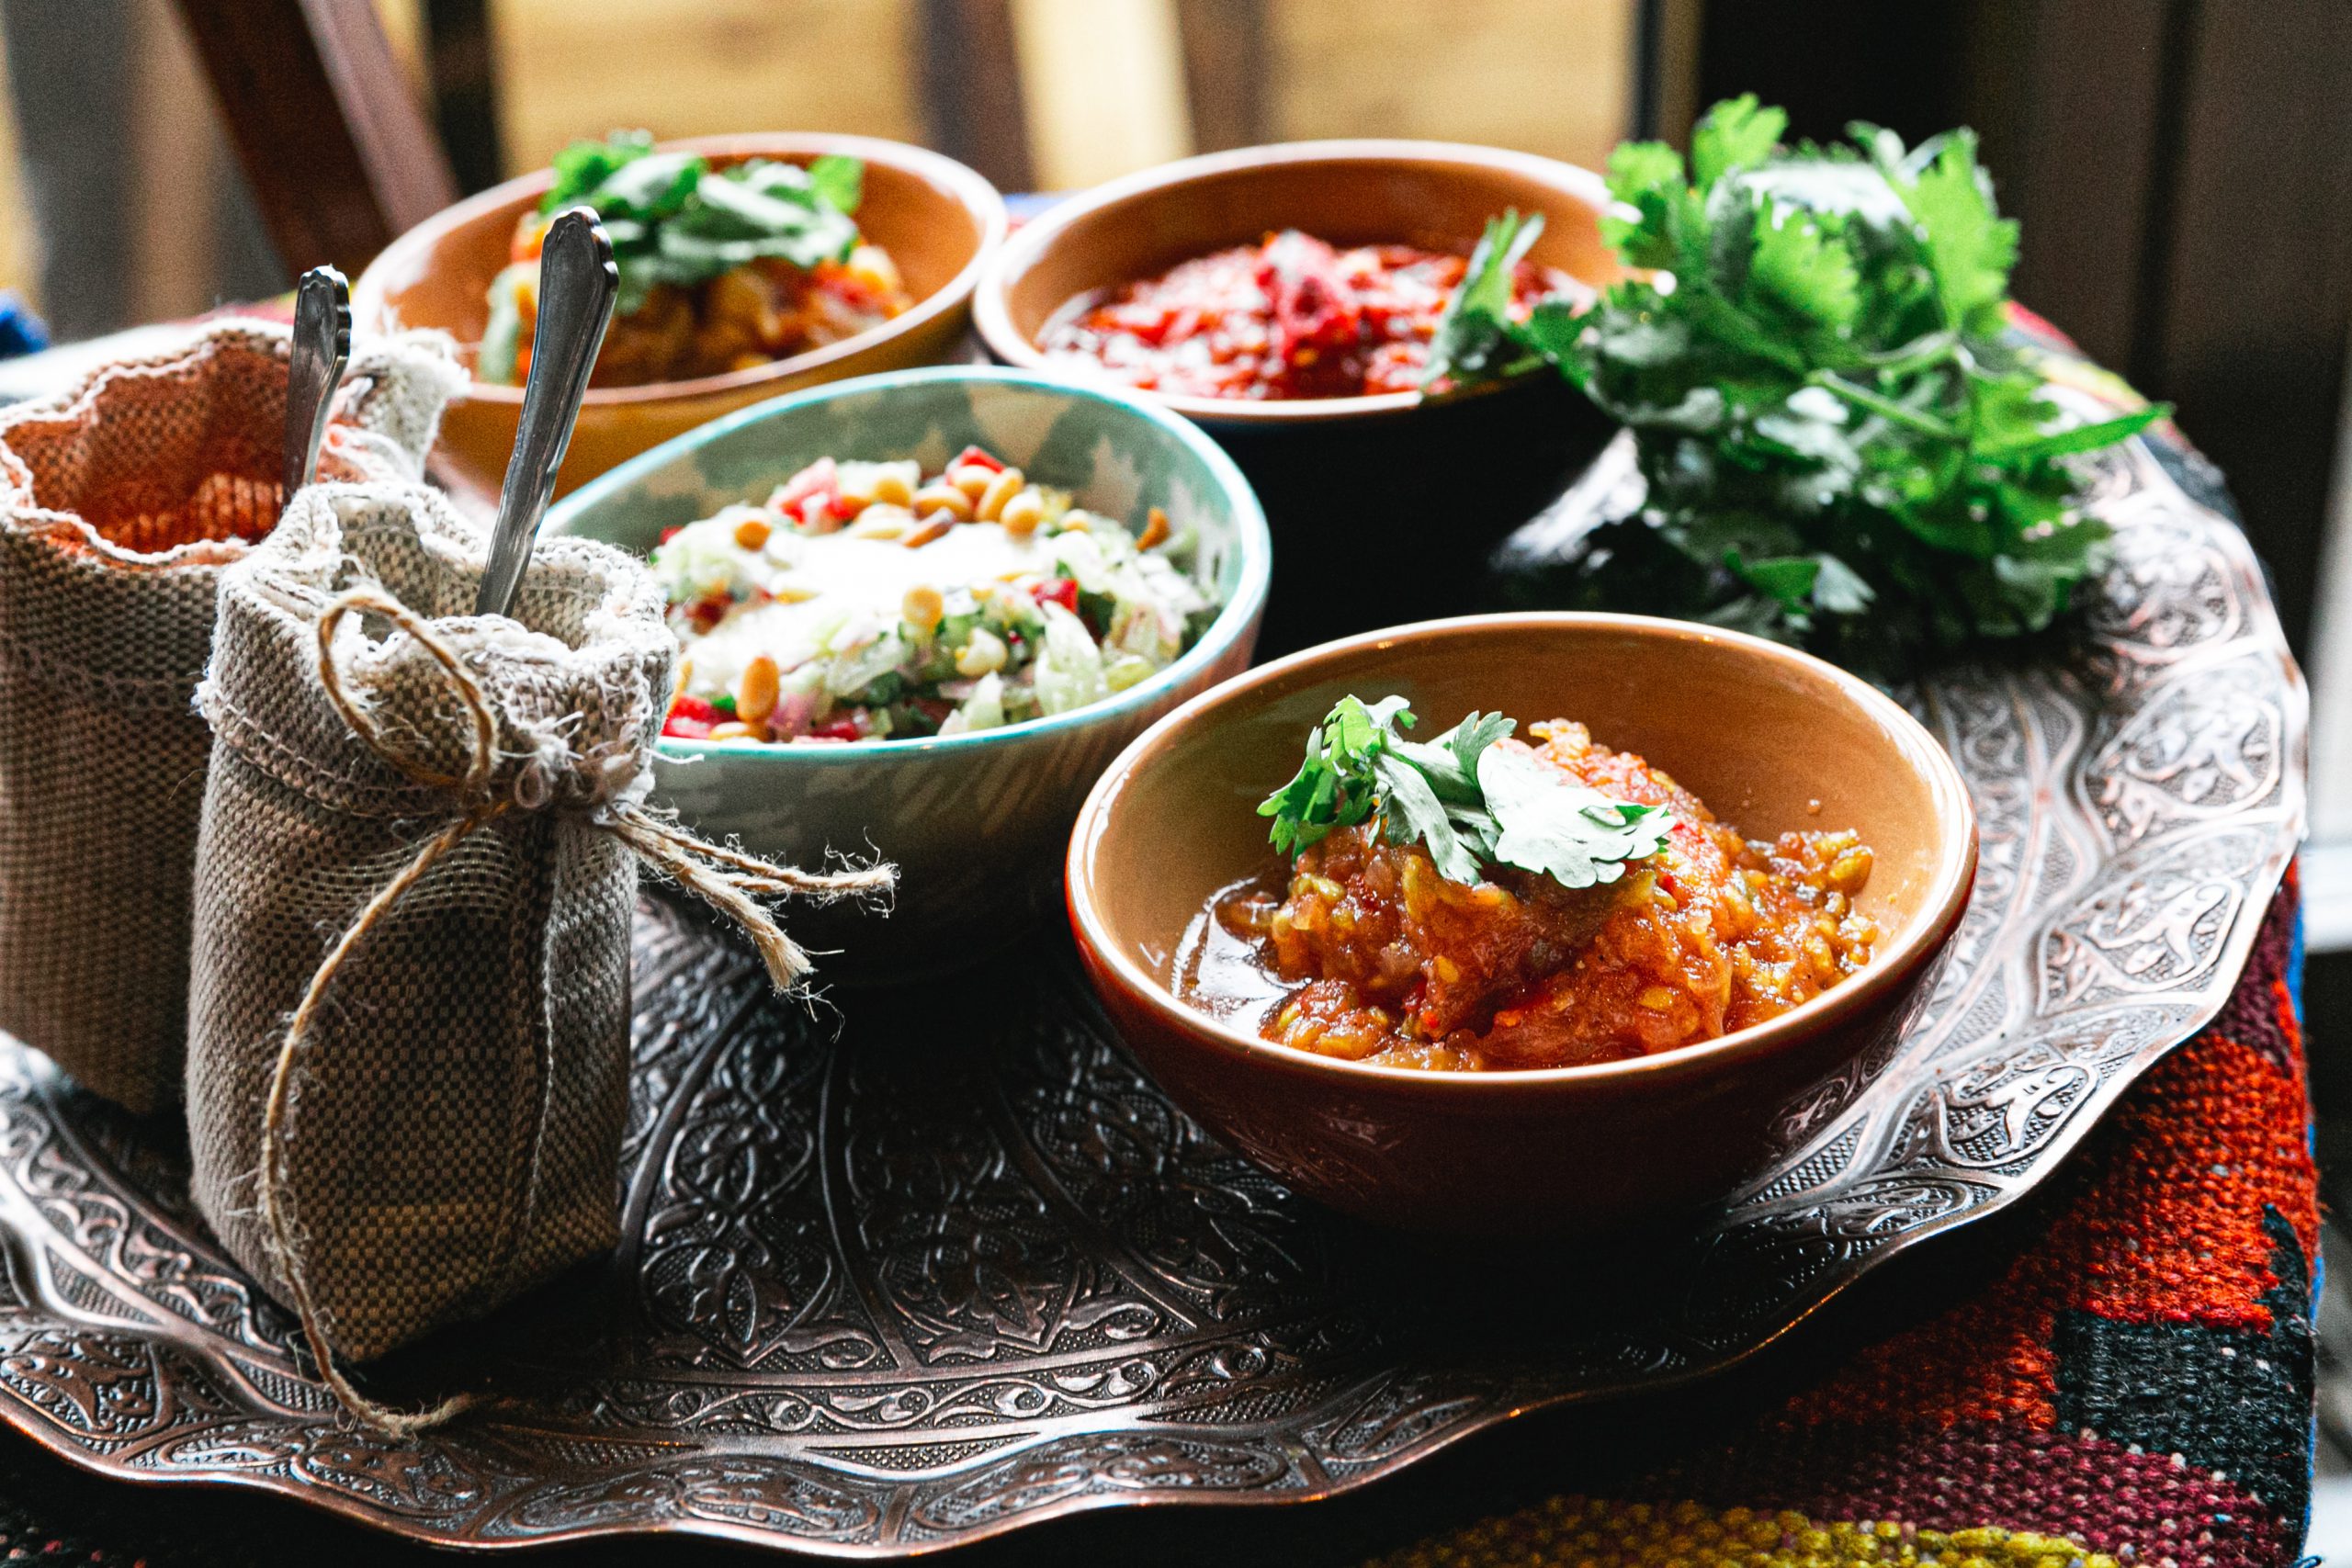 Ramazan ayına özel her gün yeni bir menü: Sebze çorbası ve baharatlı ciğer